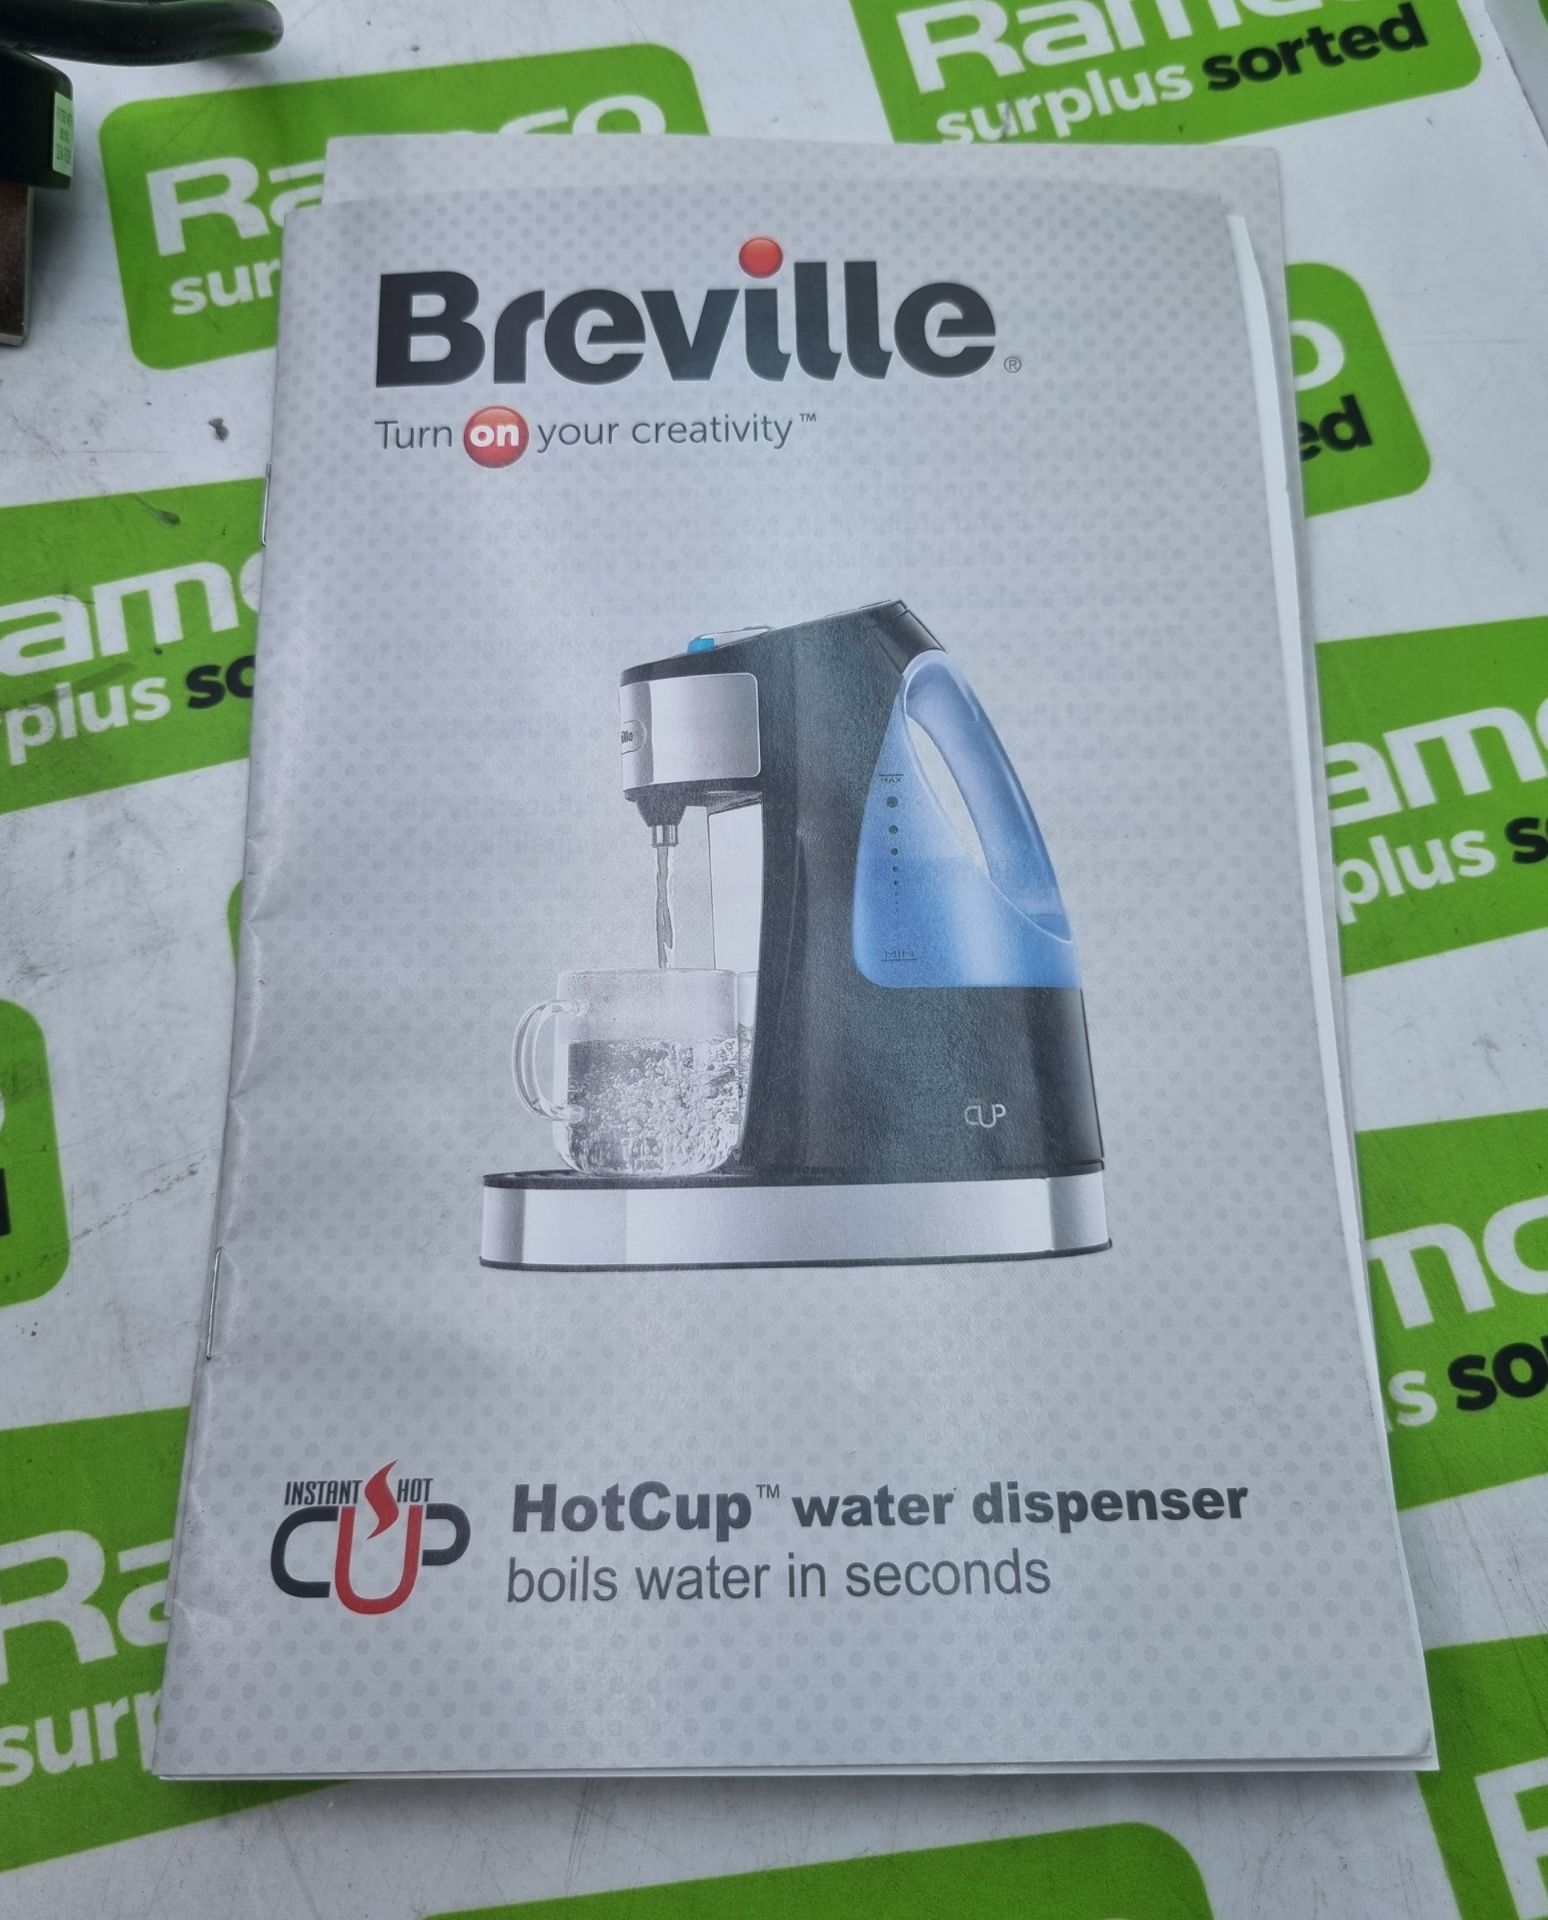 Breville One Cup beverage maker - Image 3 of 5